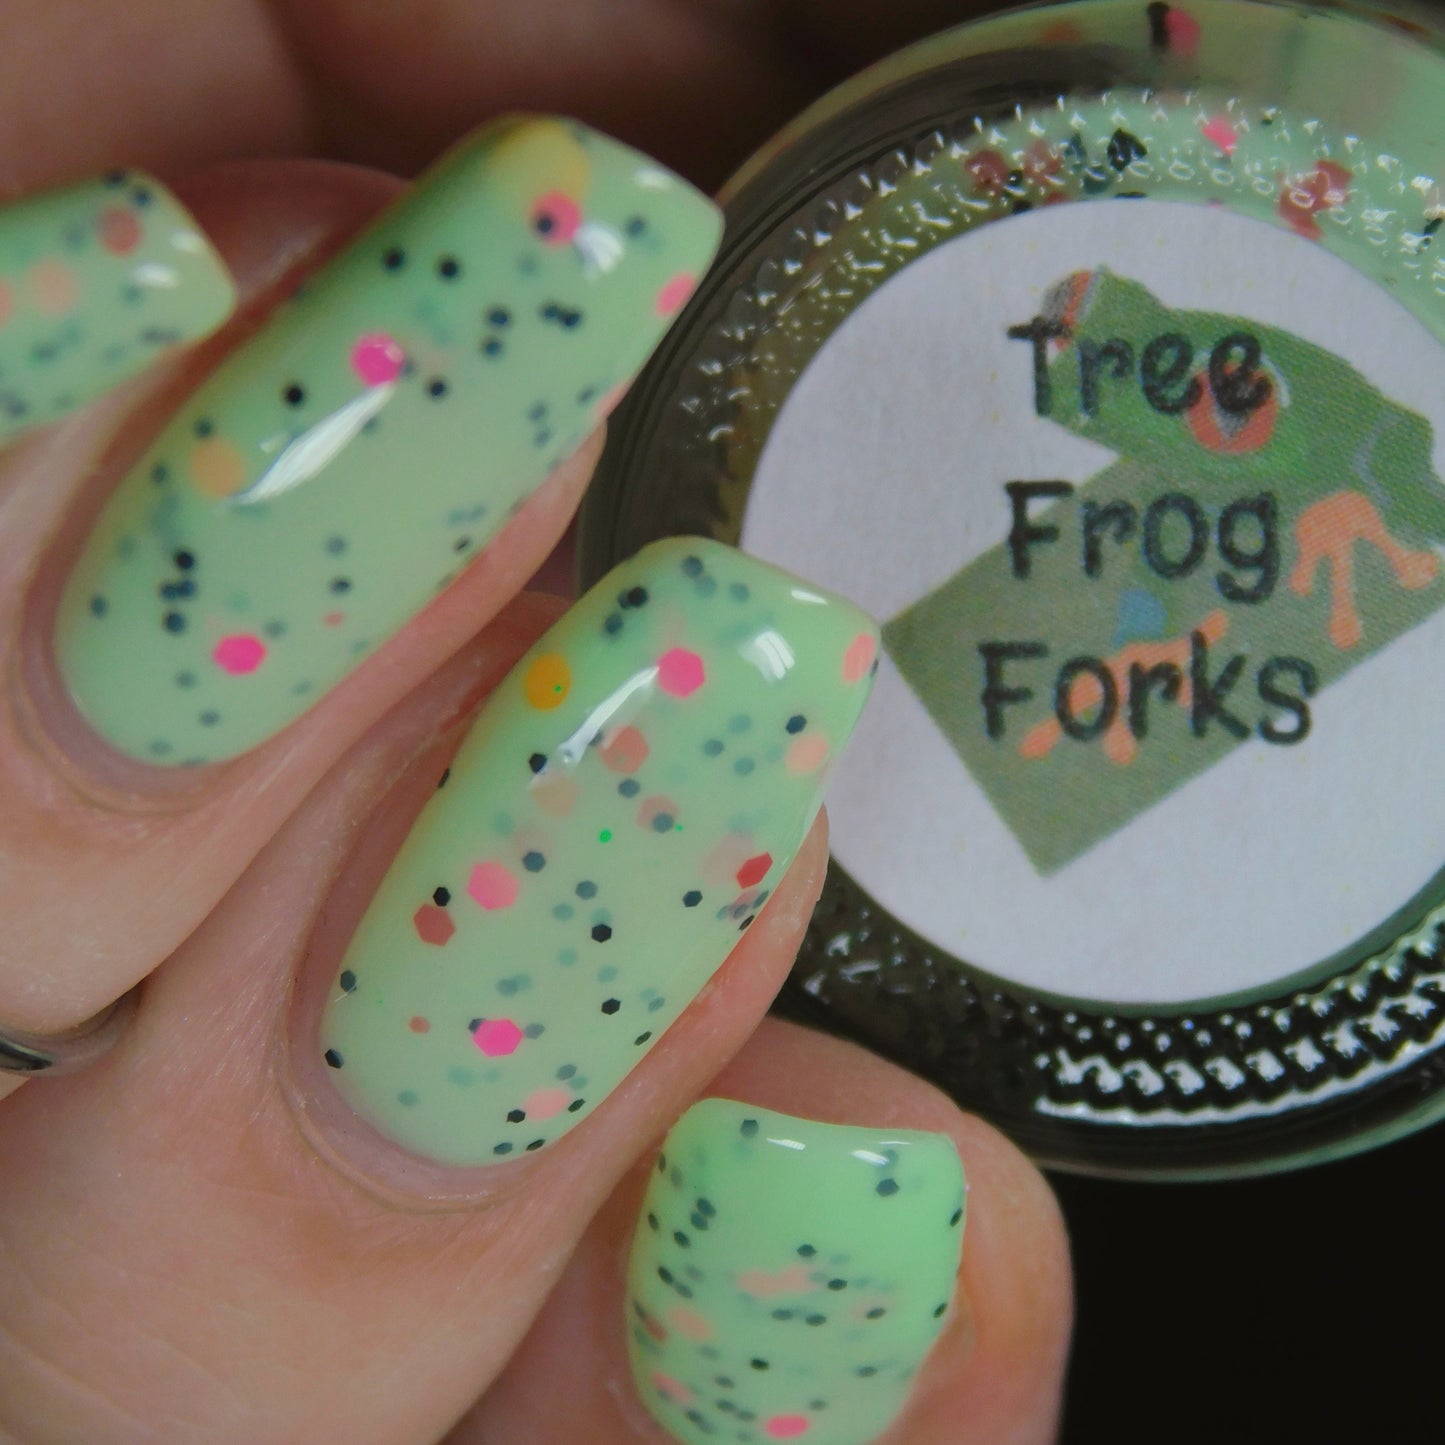 Tree Frog Forks